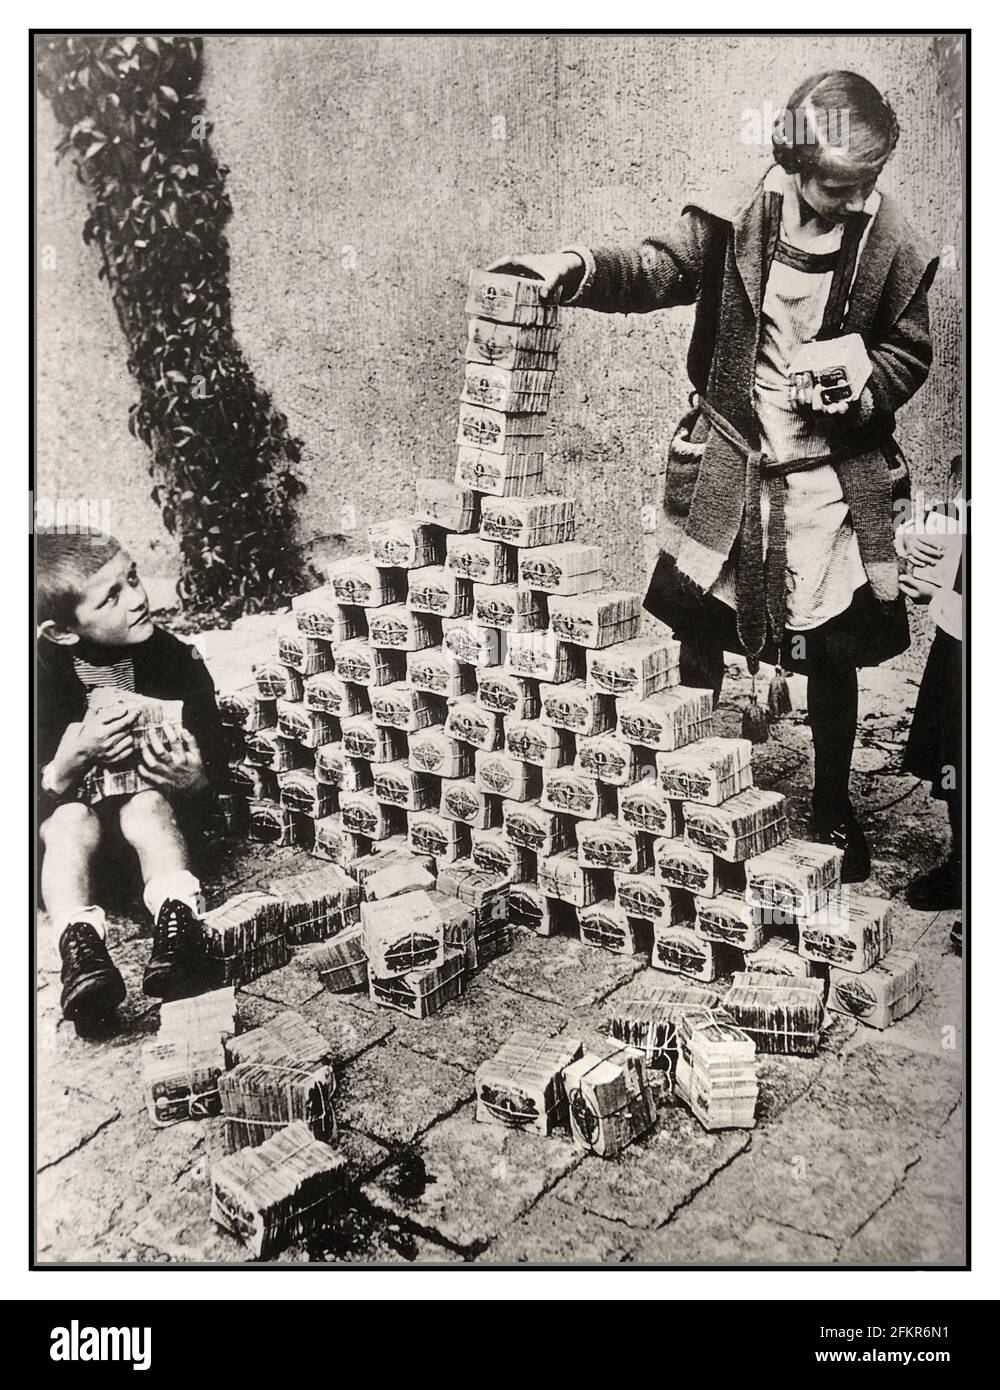 ALLEMAGNE WEIMAR INFLATION des années 1920 Archive hyperinflation Allemagne, enfants utilisant des billets de banque comme jouets, Allemagne, années 1920. Entre 1921 et 1923, l'hyperinflation a affecté le Papiermark allemand, la monnaie de la République de Weimar, principalement en 1923. Elle a provoqué une instabilité politique interne considérable dans le pays, l'occupation de la Ruhr par la France et la Belgique ainsi que la misère de la population en général. Imprimer plus d'argent est exactement ce que l'Allemagne de Weimar a fait en 1922. L'hyperinflation a conduit à l'effondrement de l'économie. Banque D'Images